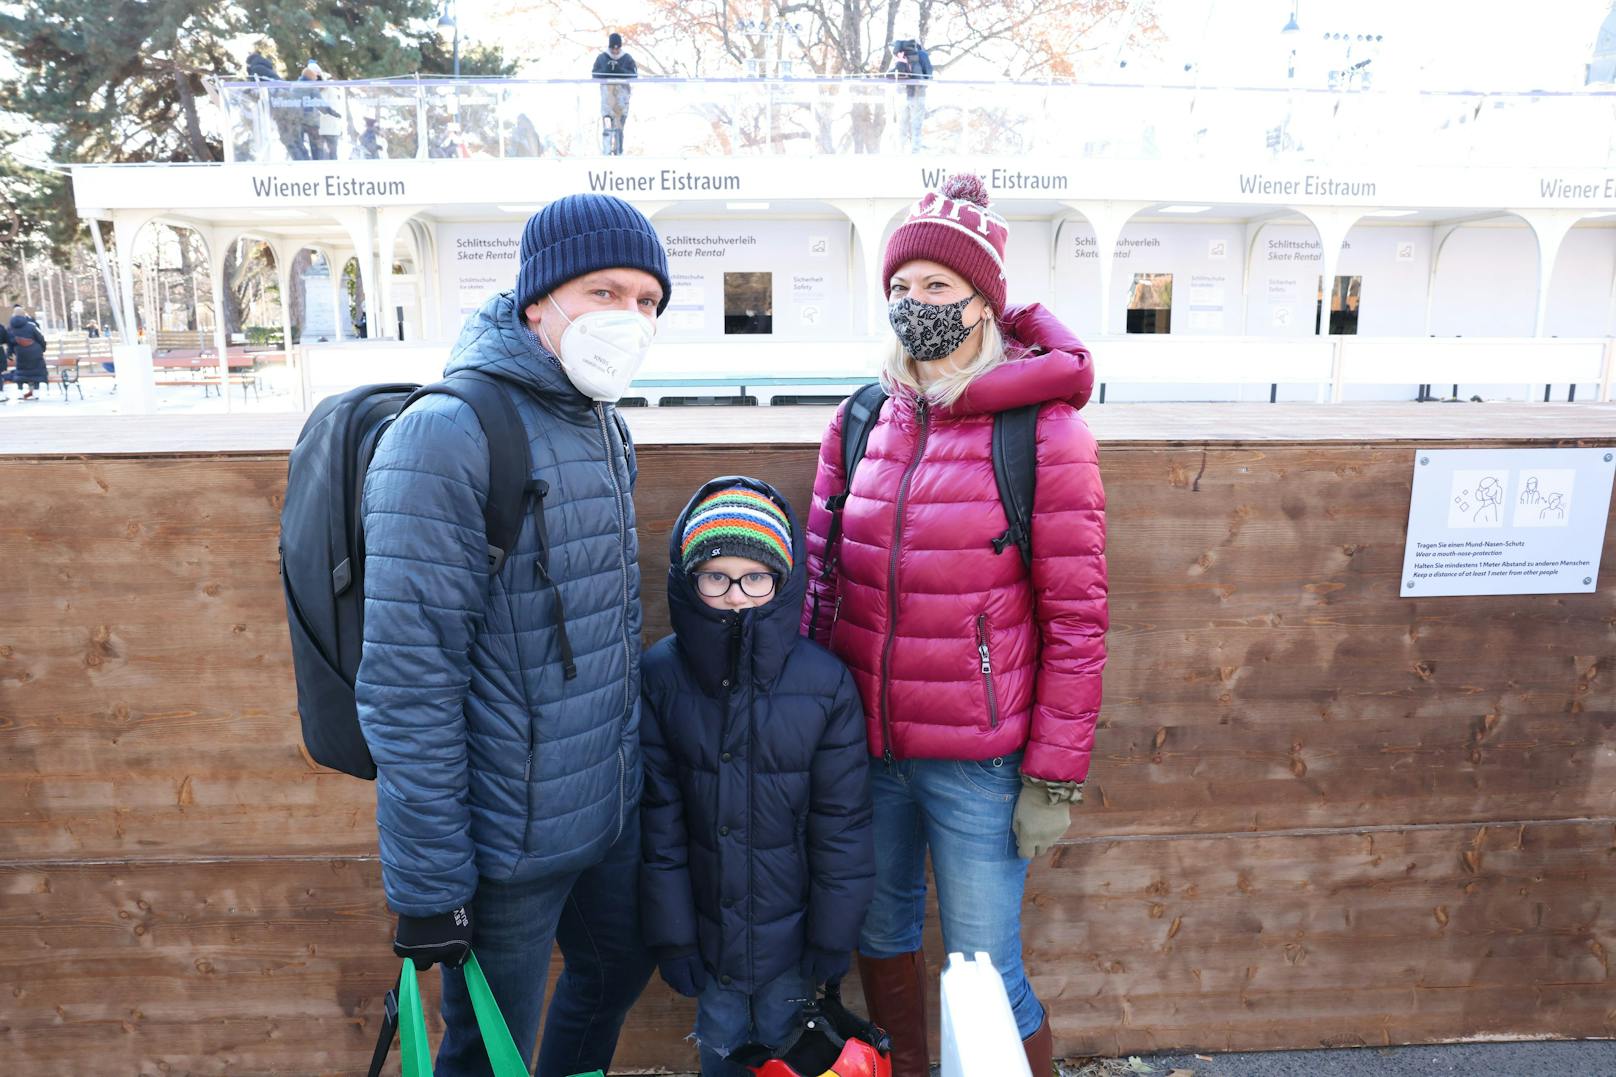 Auch Gregor (46) stand mit seiner Familie über eine Stunde in der Kälte: "Meinem Kind ist kalt. Wenn es besser organisiert ist, kommen wir wieder."